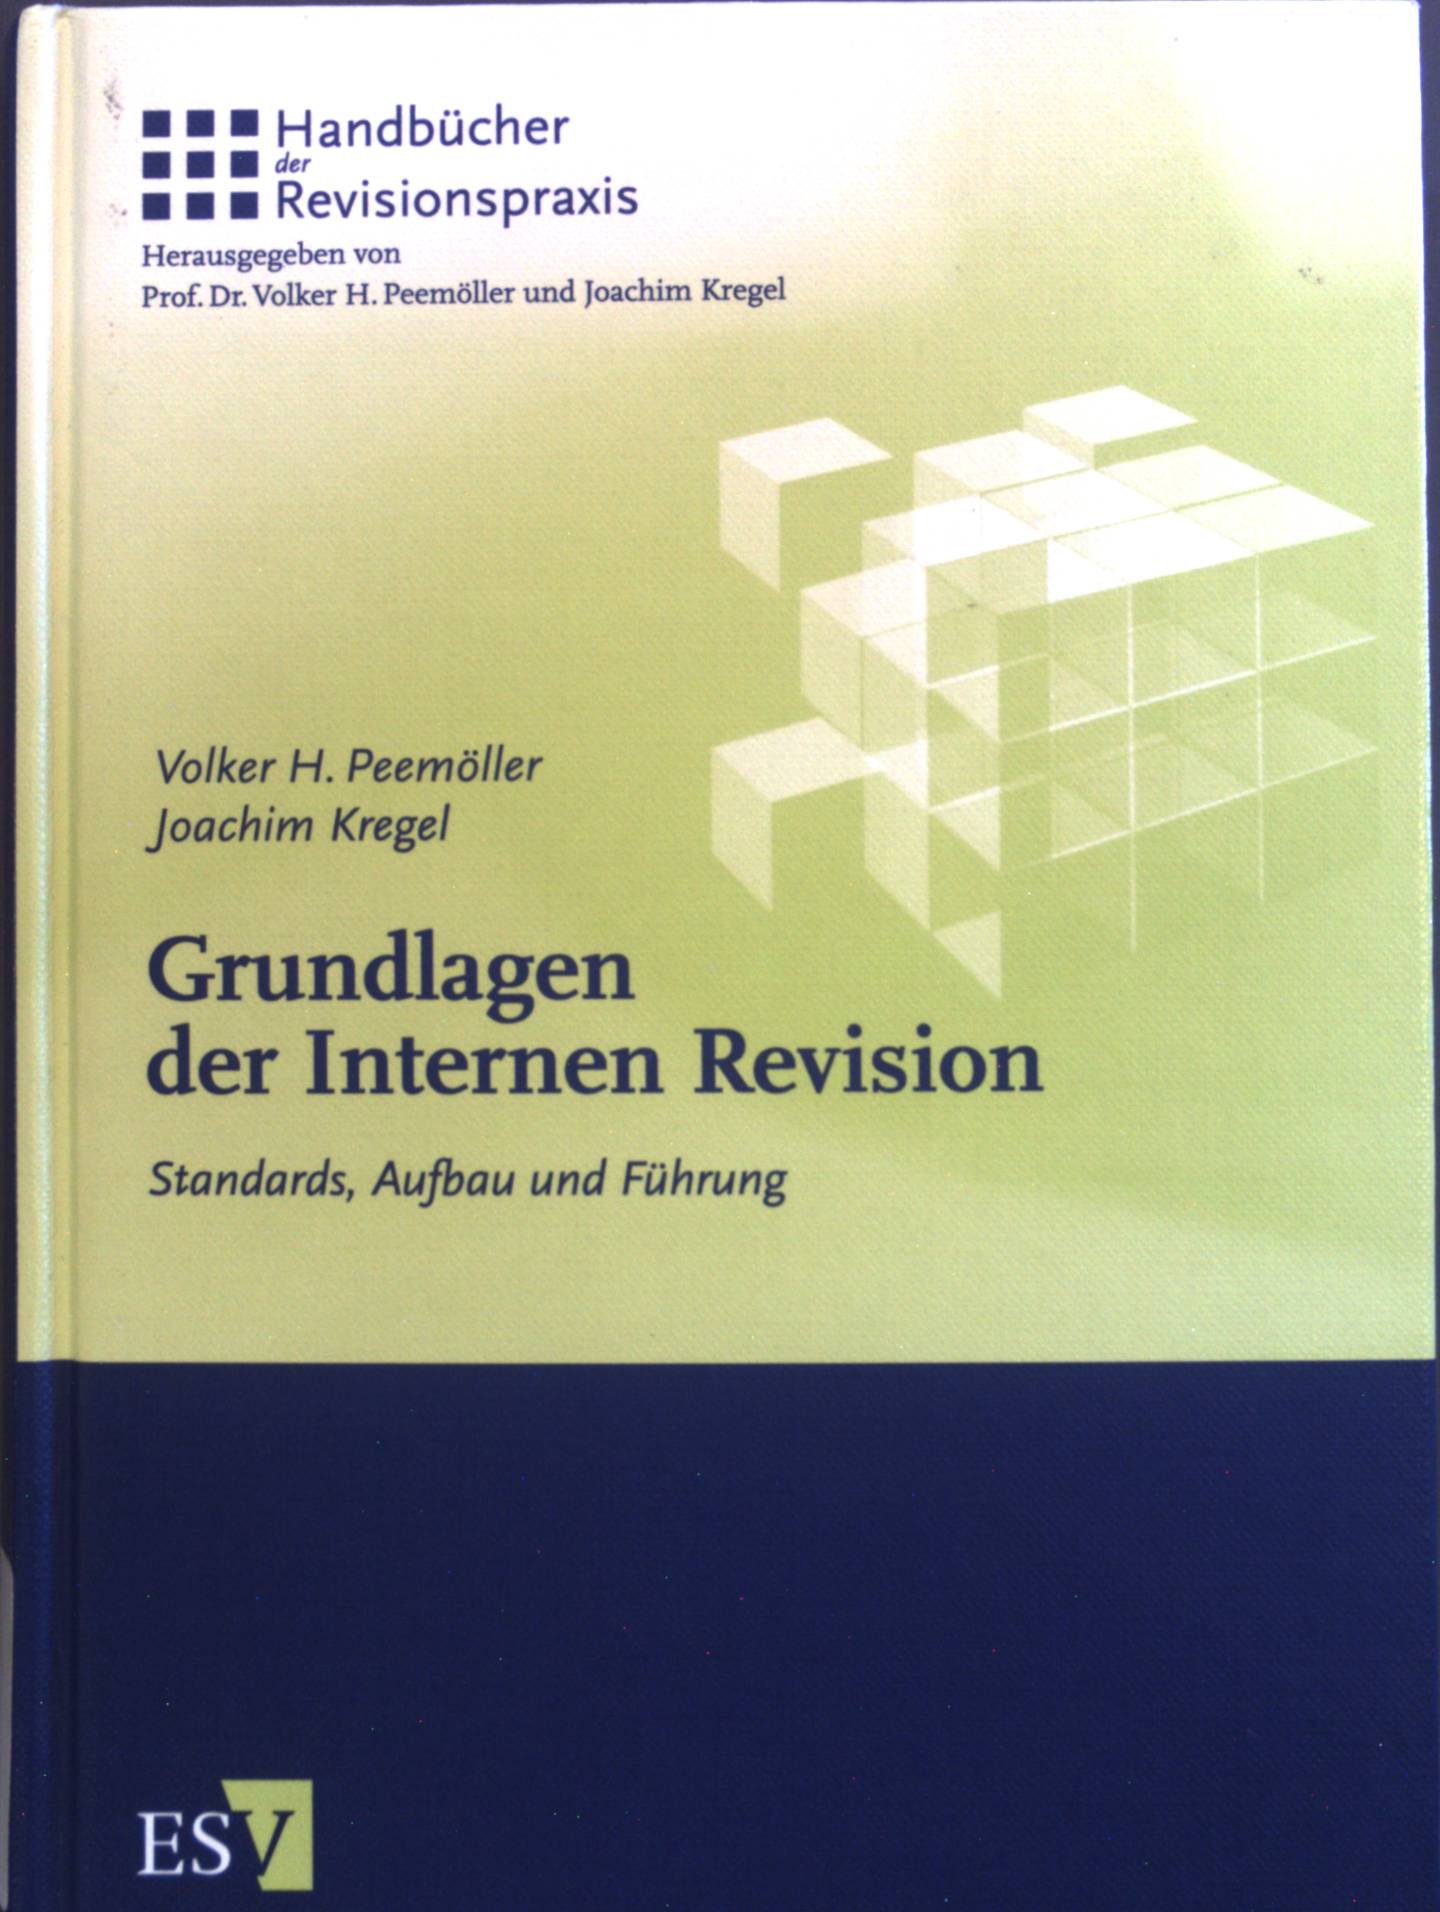 Grundlagen der internen Revision : Standards, Aufbau und Führung. - Peemöller, Volker H. und Joachim Kregel